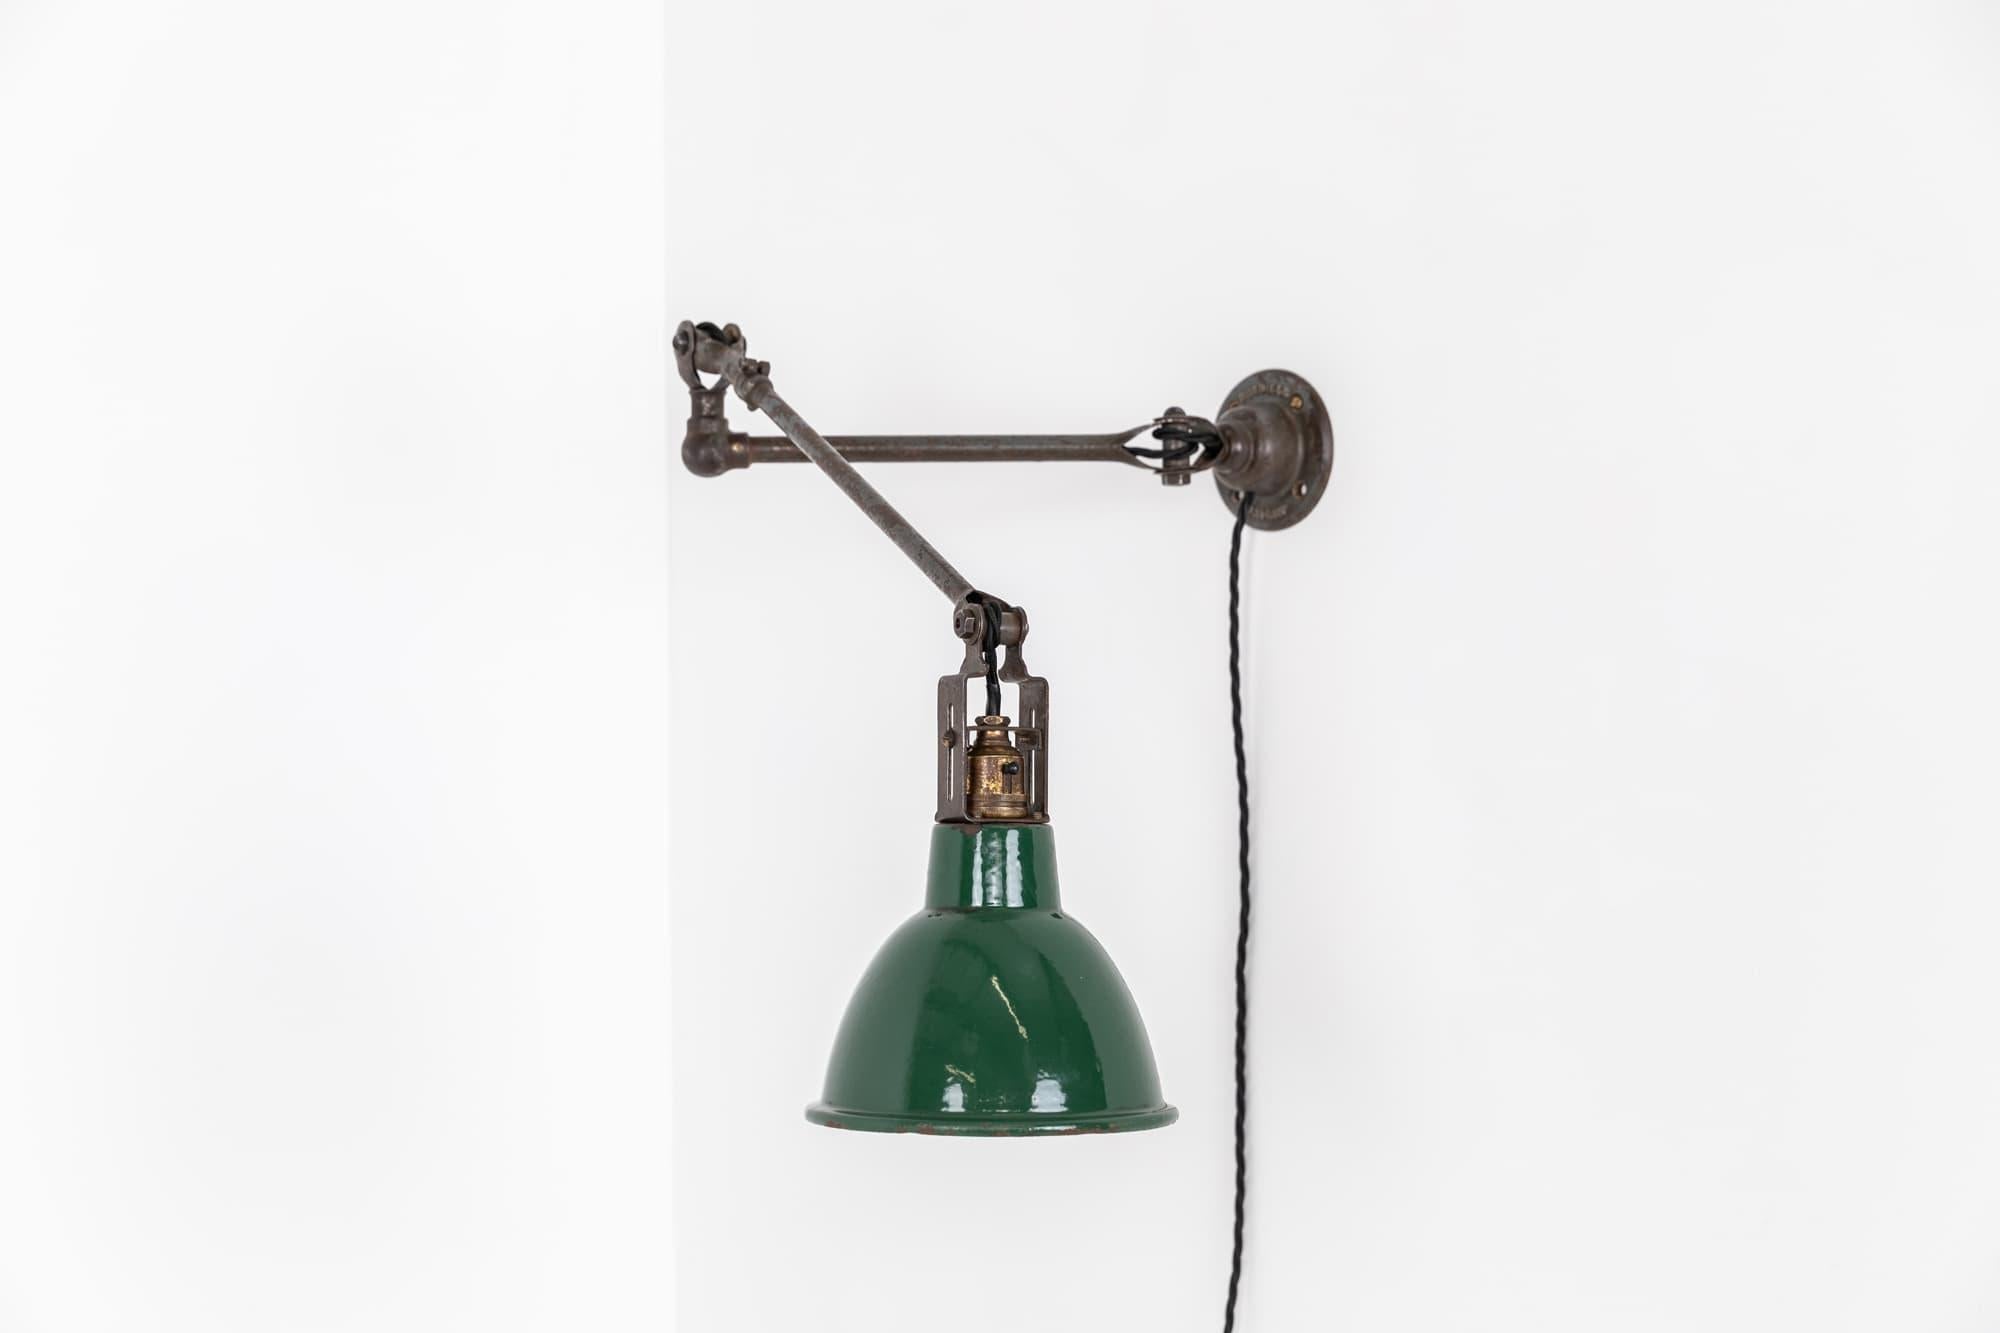 Lampe d'ouvrier magnifiquement conçue par les fabricants d'éclairage renommés Dugdills. c.1930.

Dans un état d'origine intact, la lampe a conservé sa peinture d'usine et même la douille en forme d'allumette. Cette lampe est très polyvalente grâce à